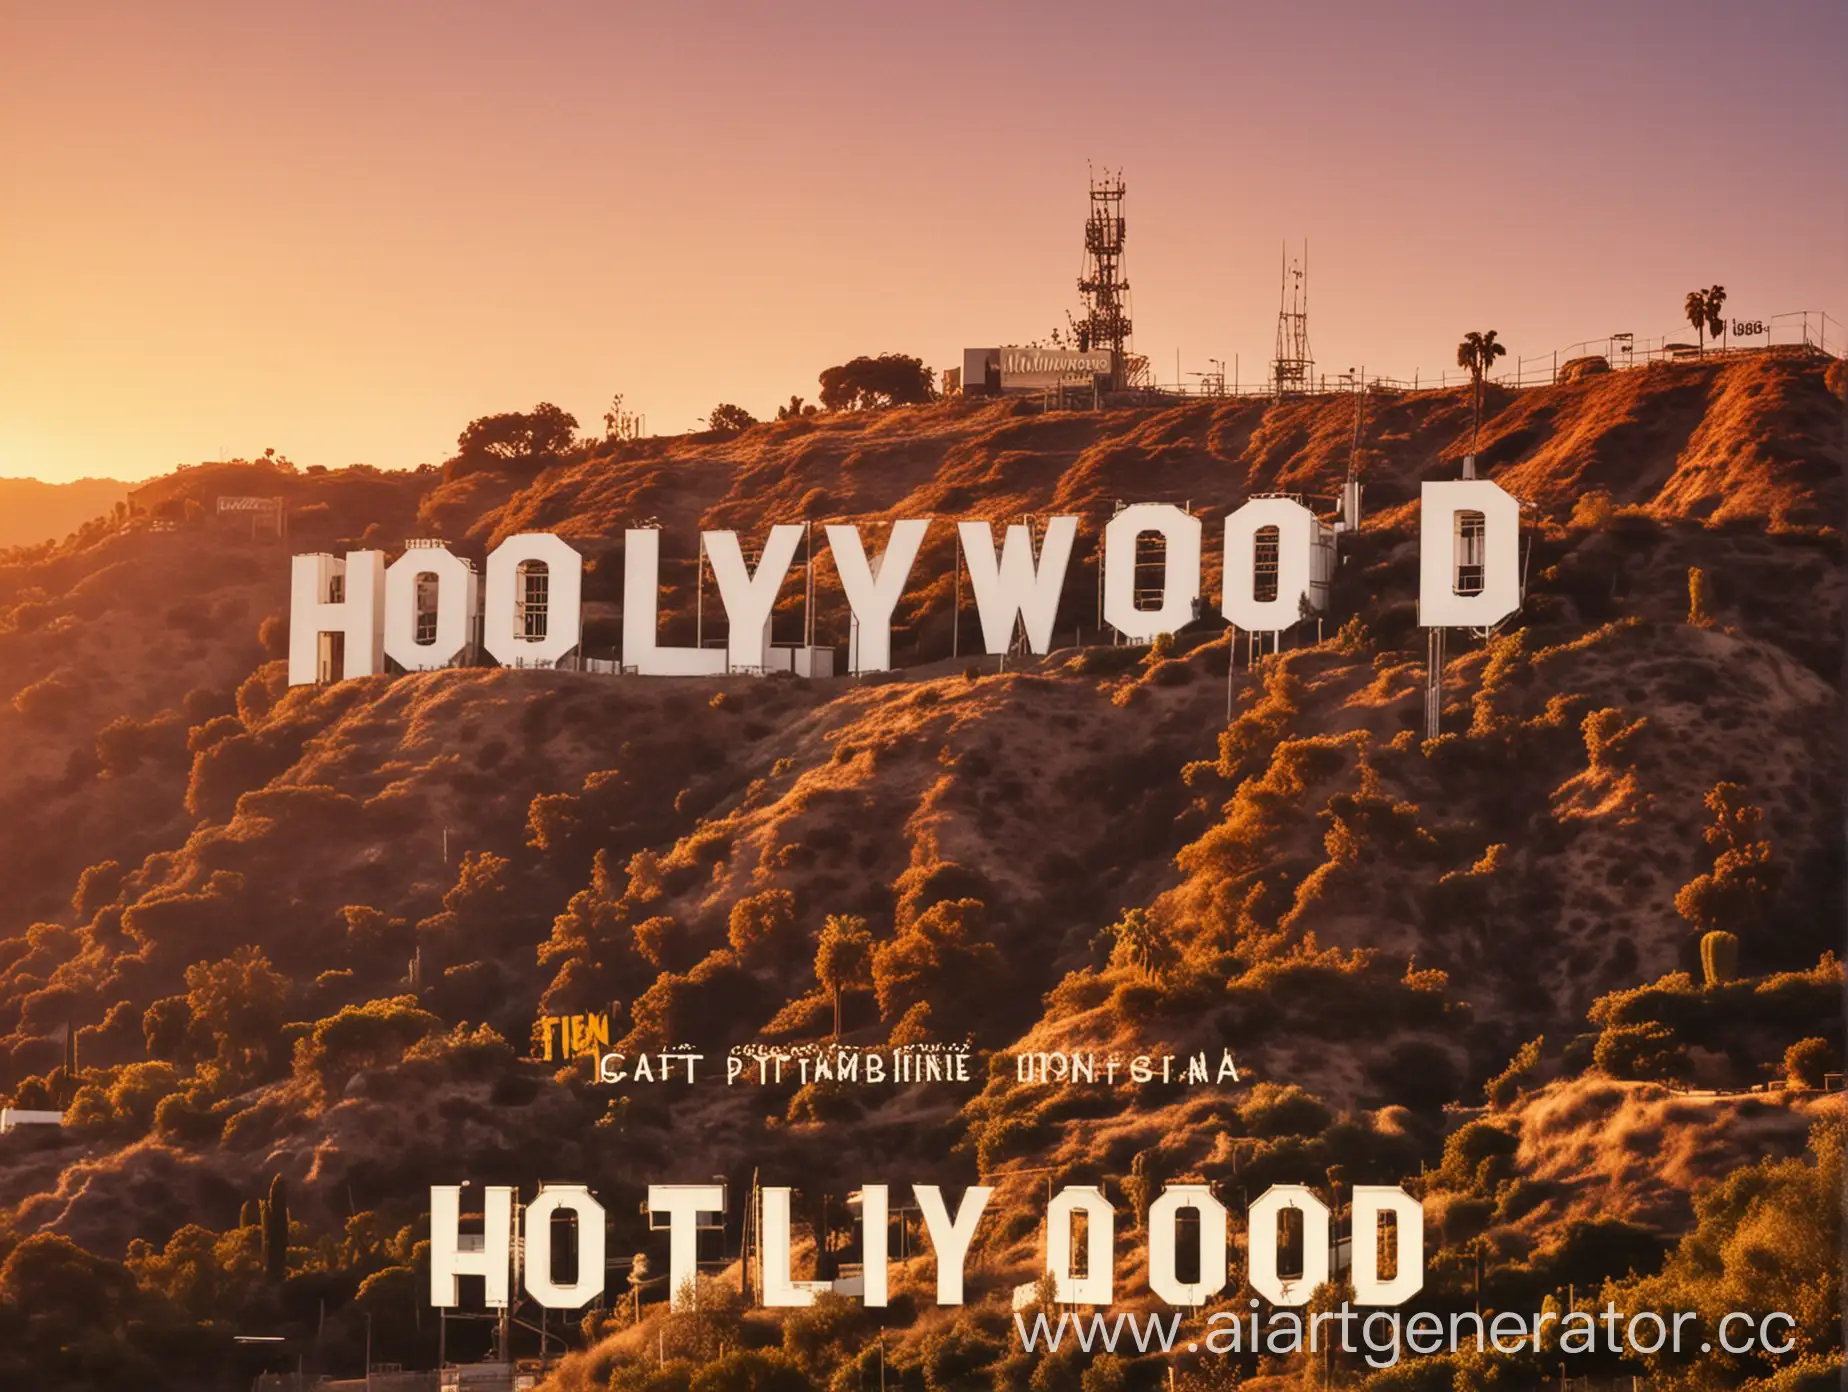 фотография голливудских холмов на закате с надписью голливуд, фотография в теплых оттенках близких к палитре #ffa200